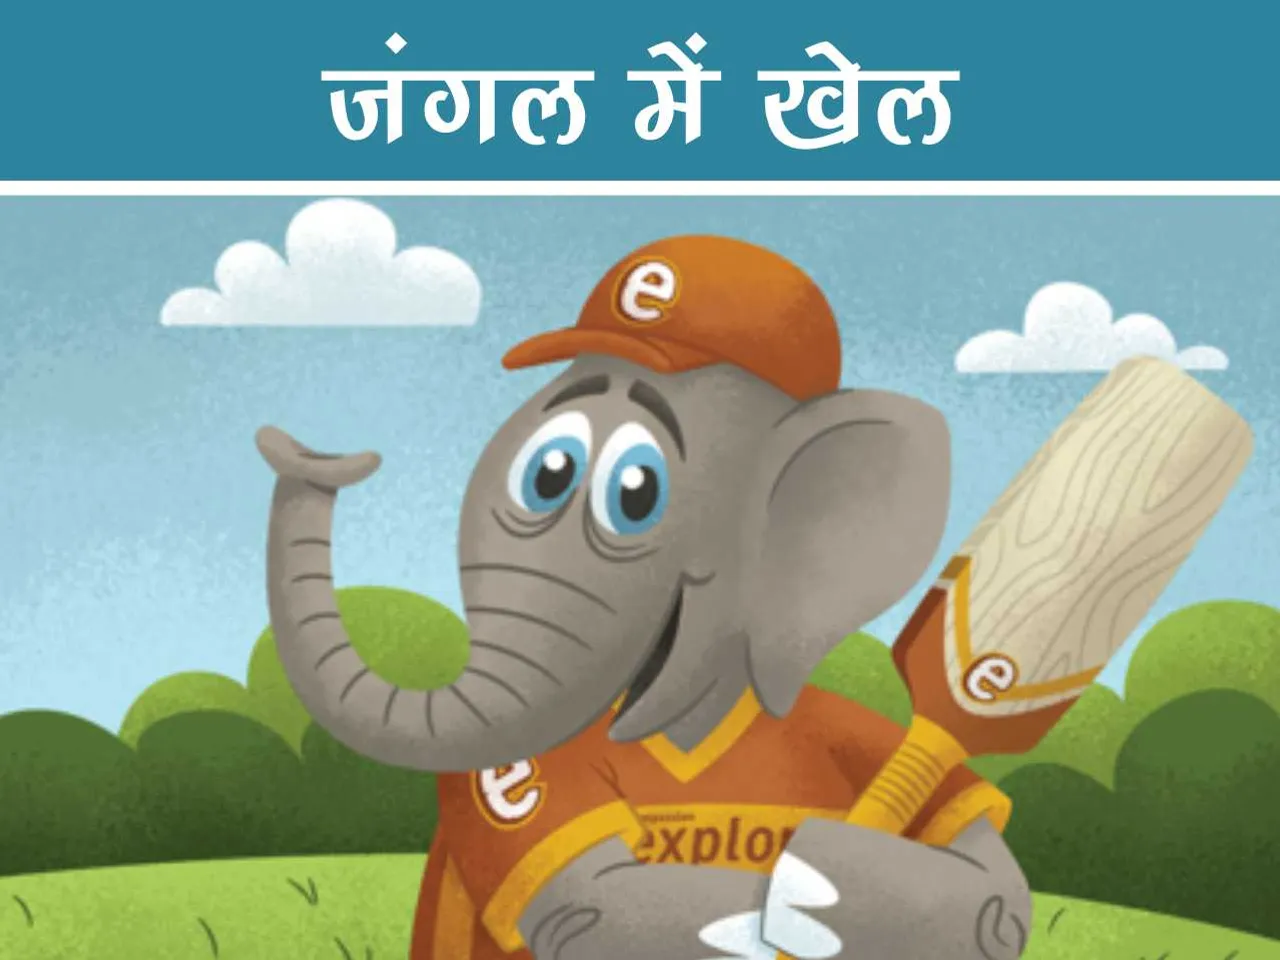 Elephant playing cricket cartoon image